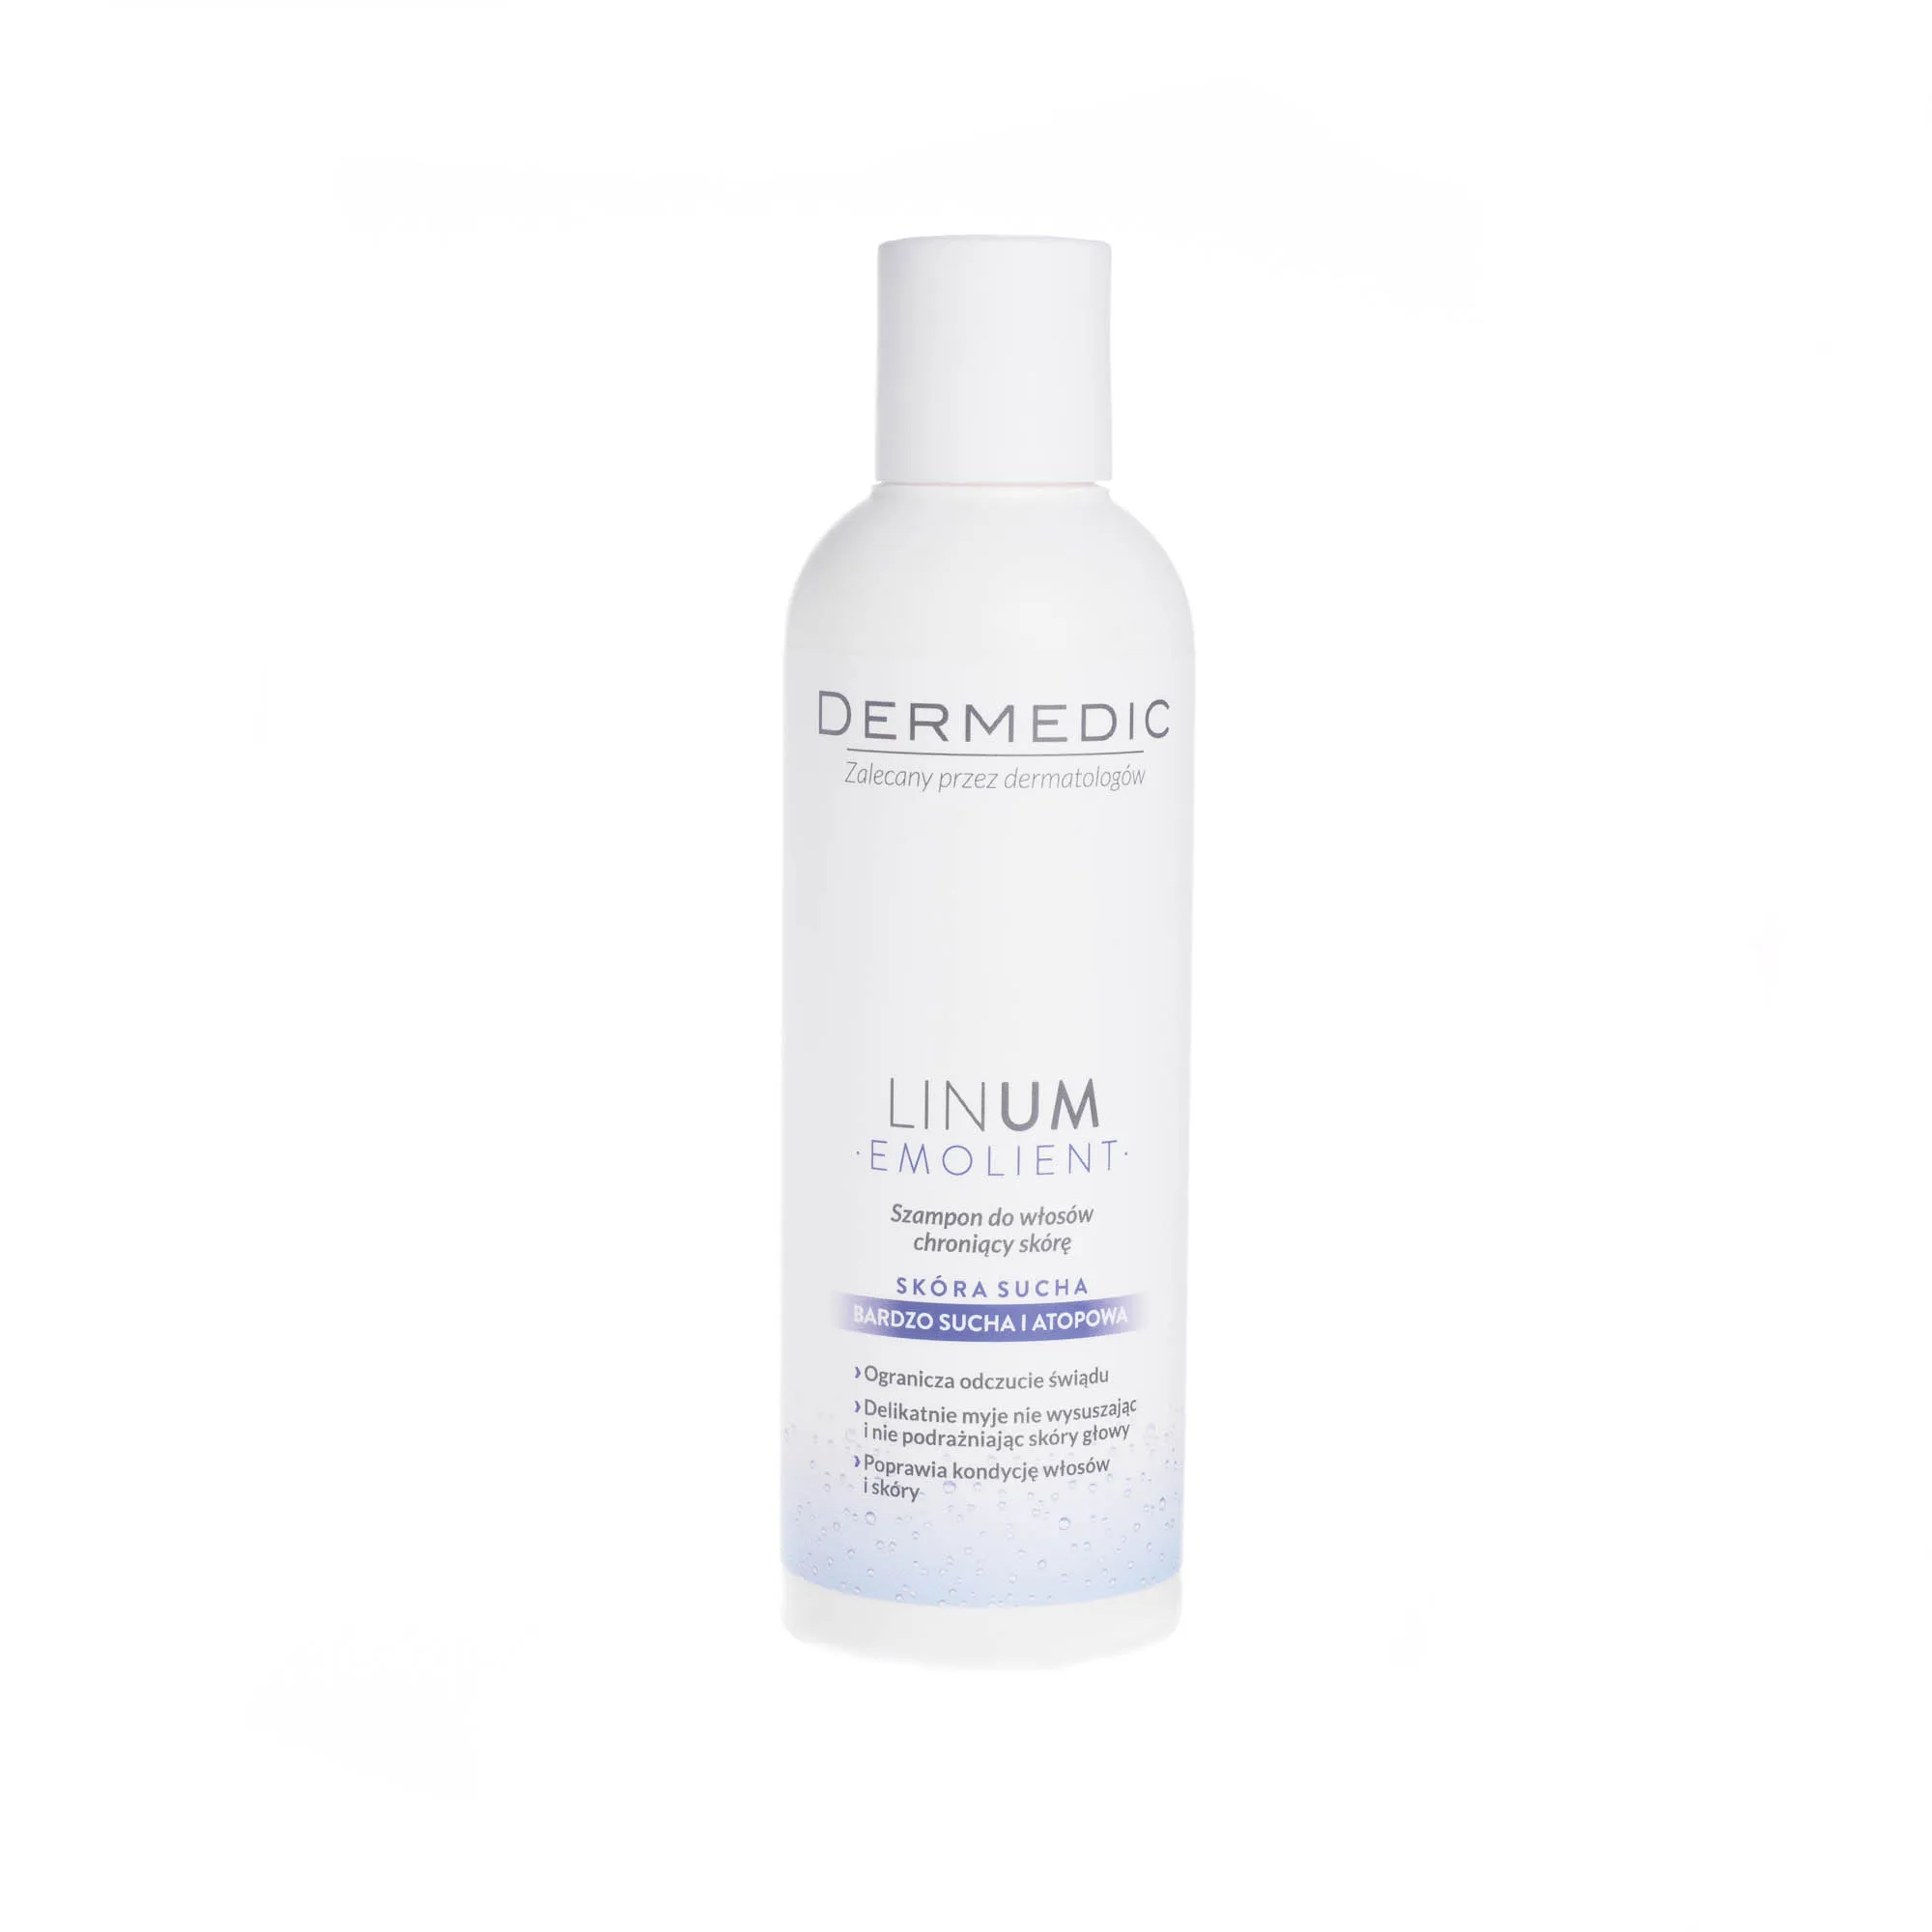 Dermedic Linum emolient szampon do włosów chroniący skórę, skóra sucha, bardzo sucha, atopowa, 200 ml